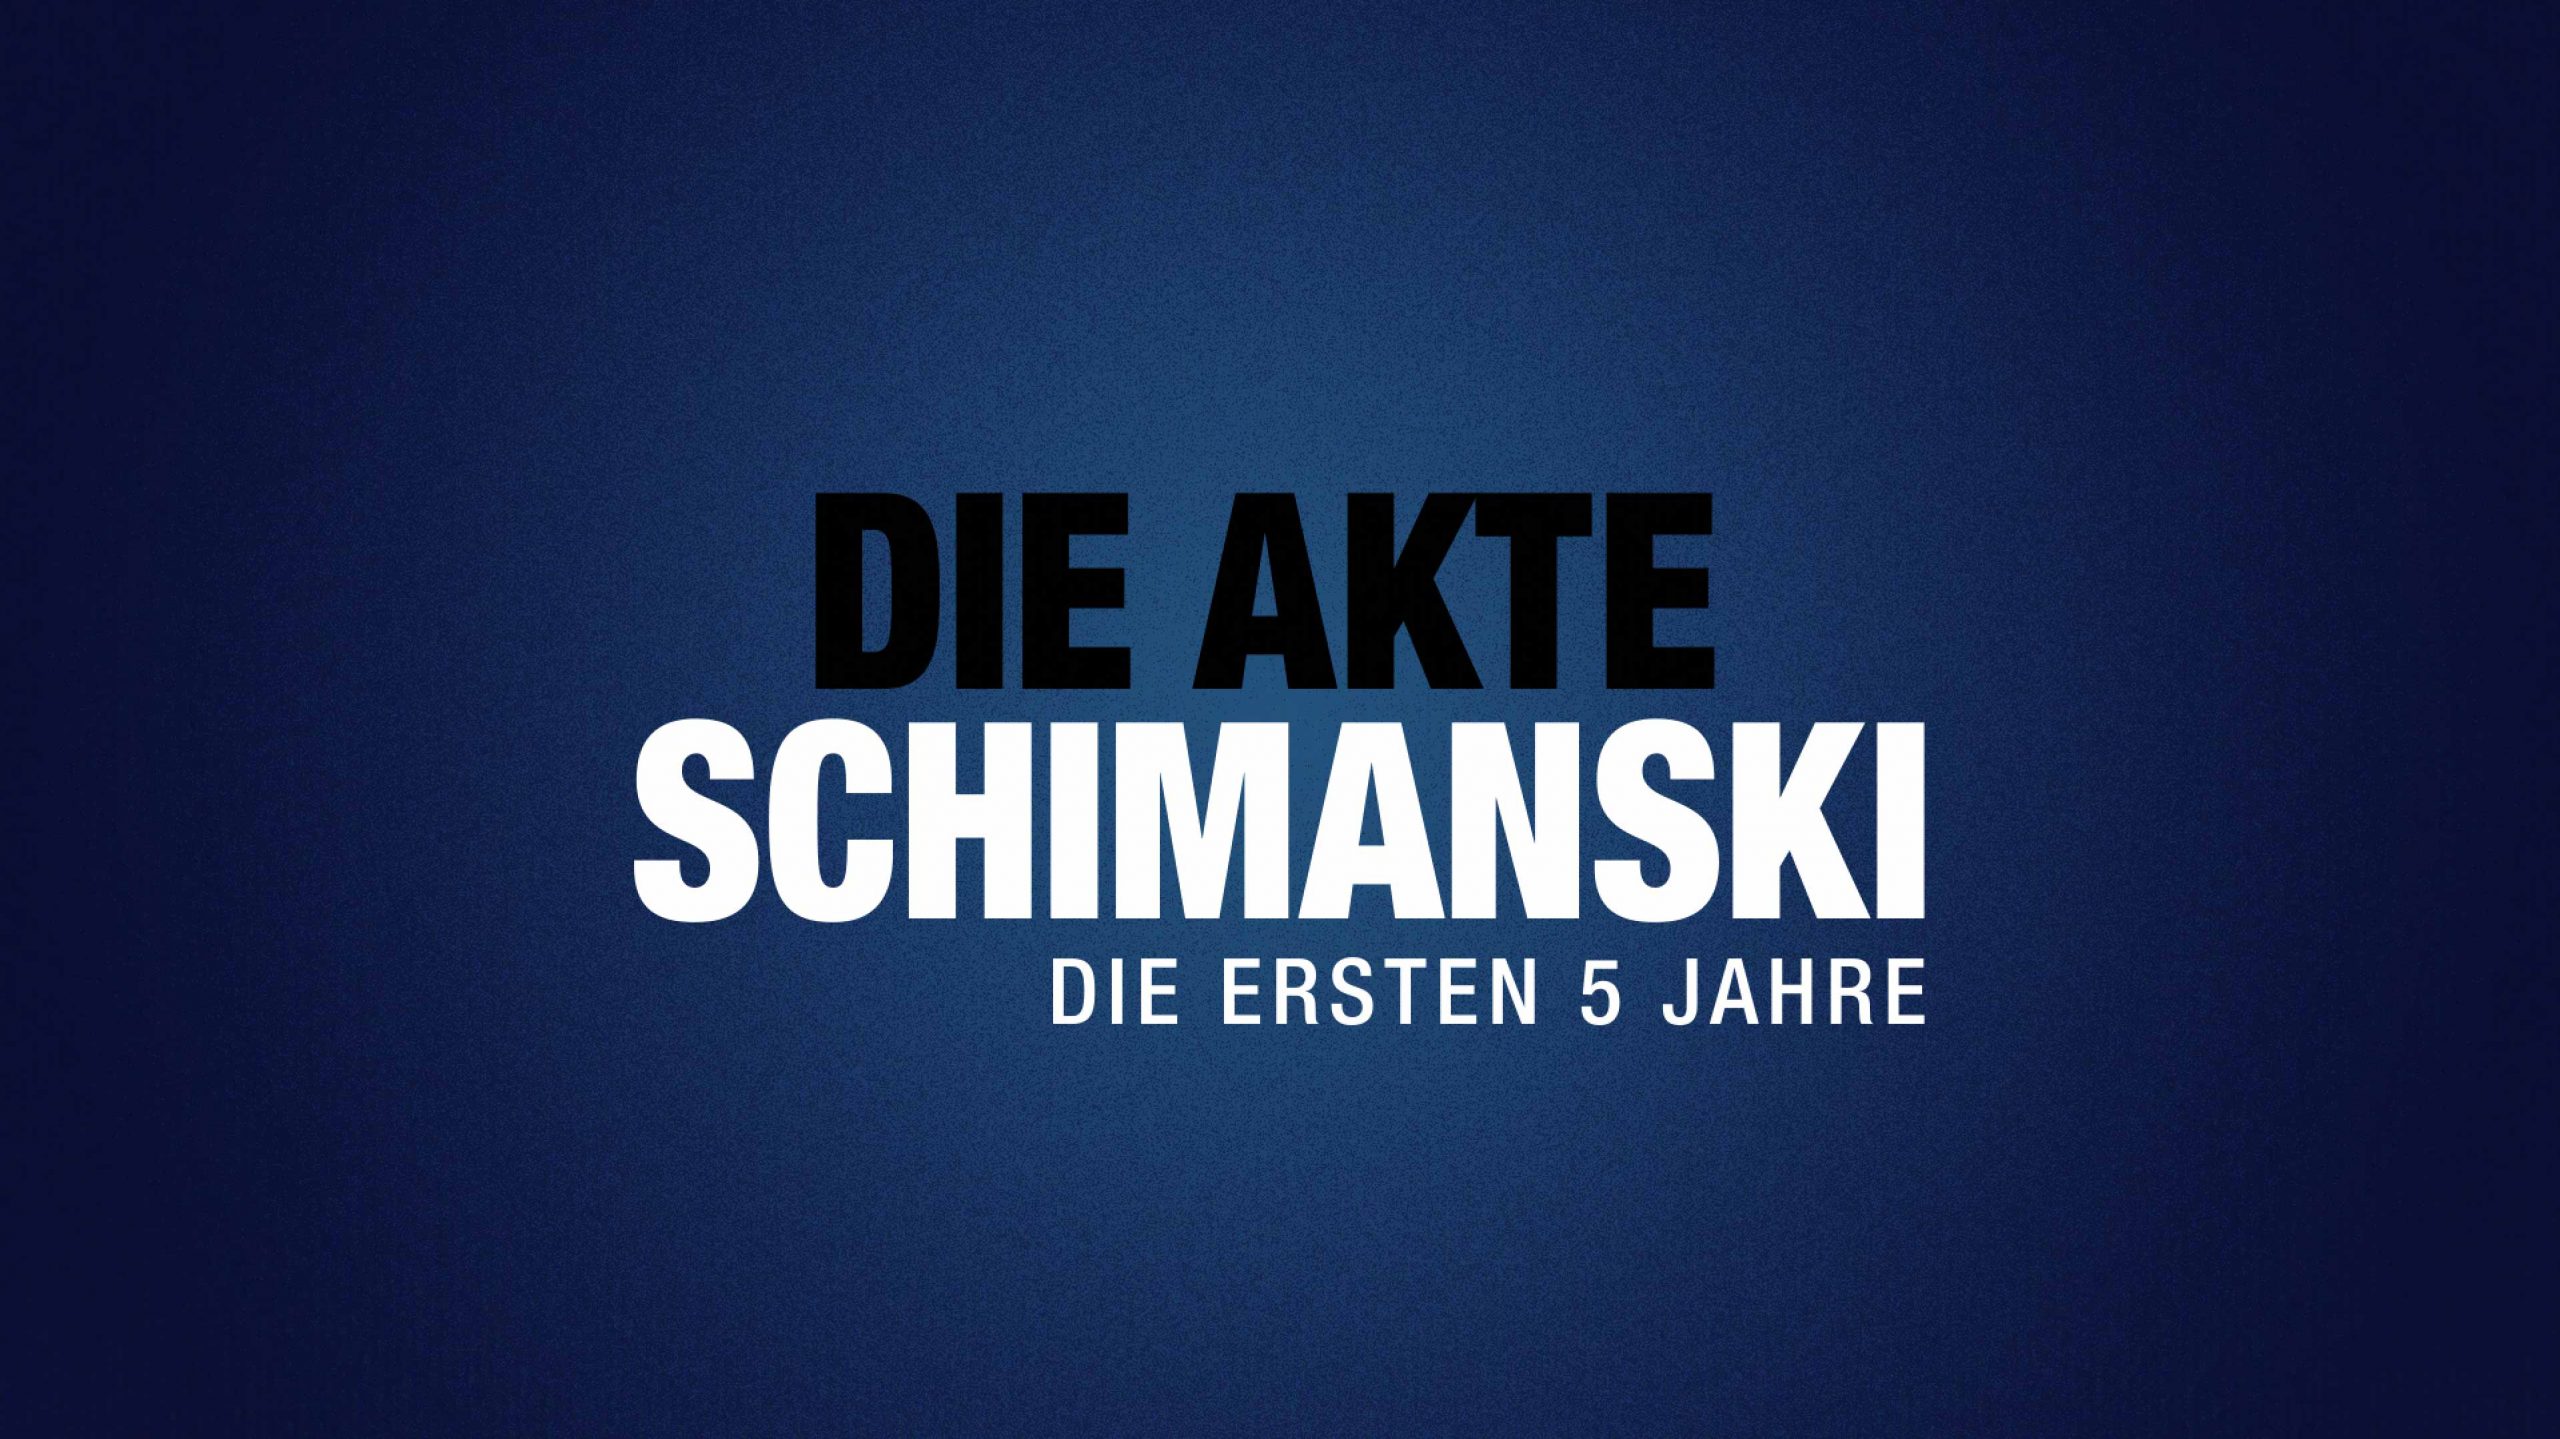 Die Akte Schimanski – 07.12. um 23.45h im WDR